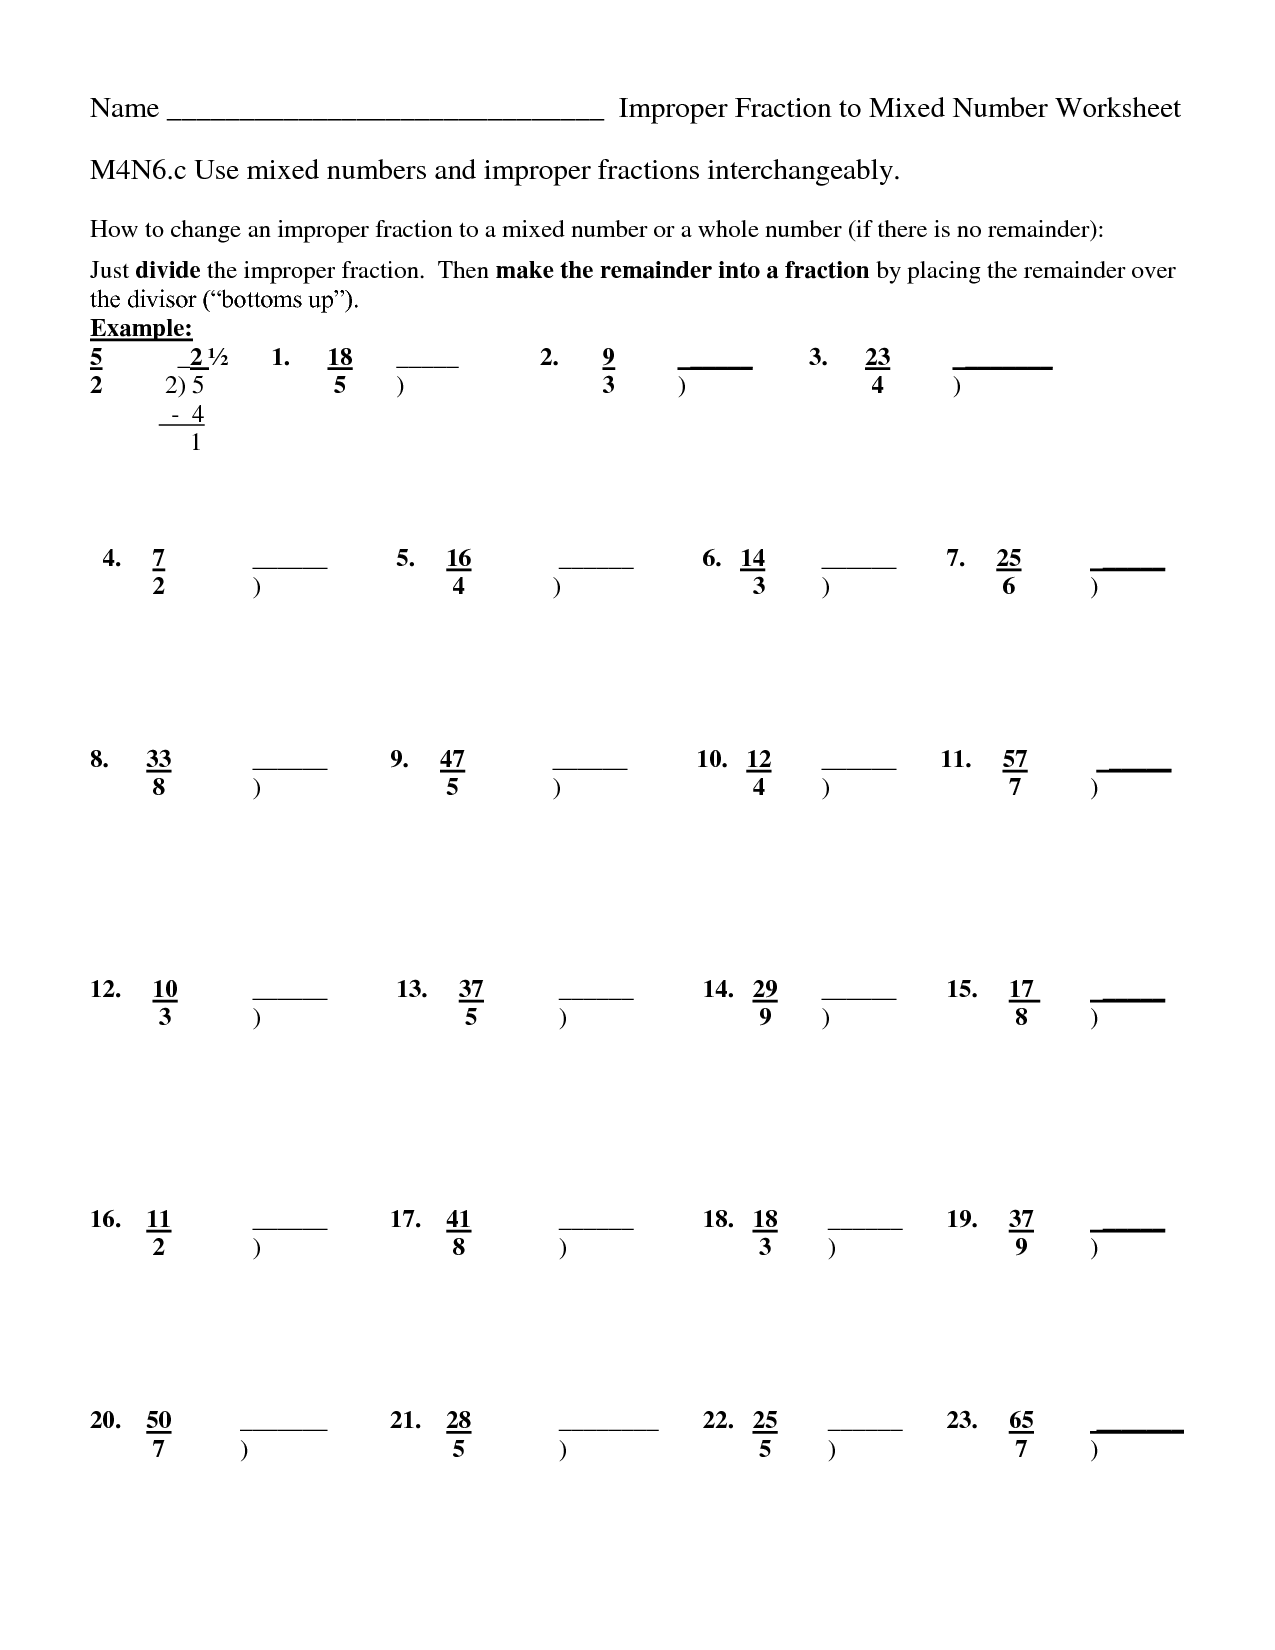 converting-improper-fractions-worksheets-99worksheets